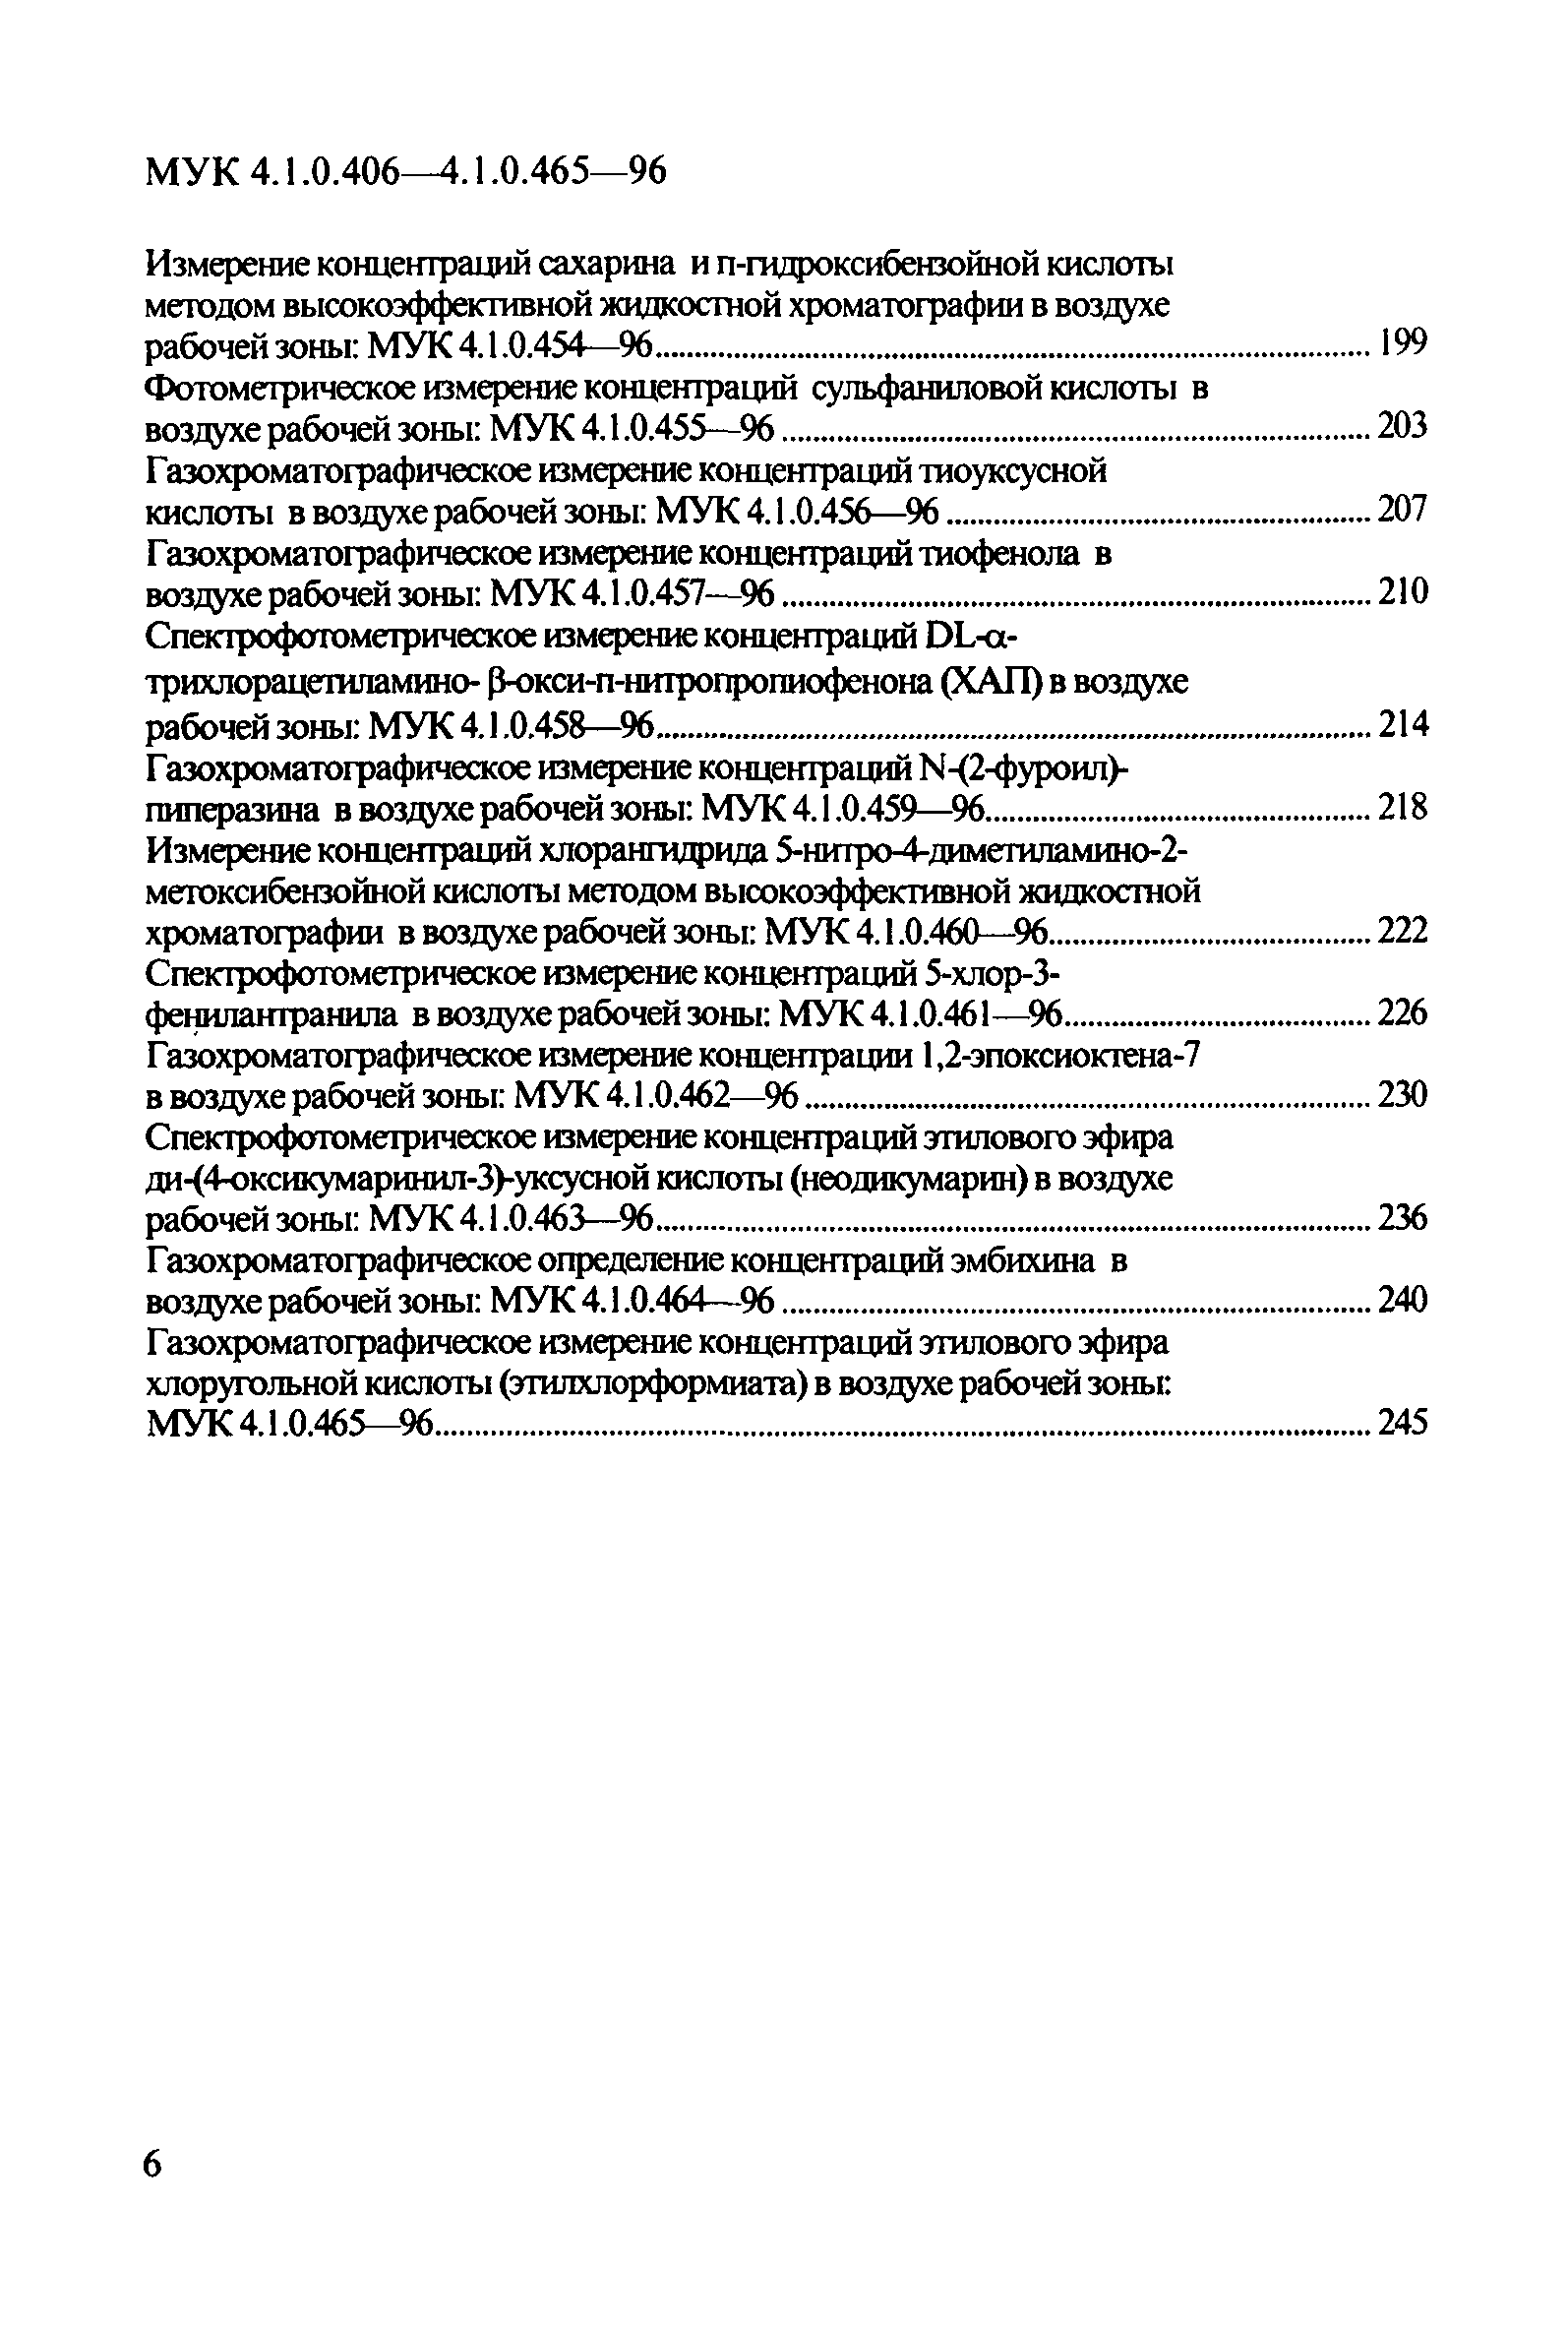 МУК 4.1.0.423-96